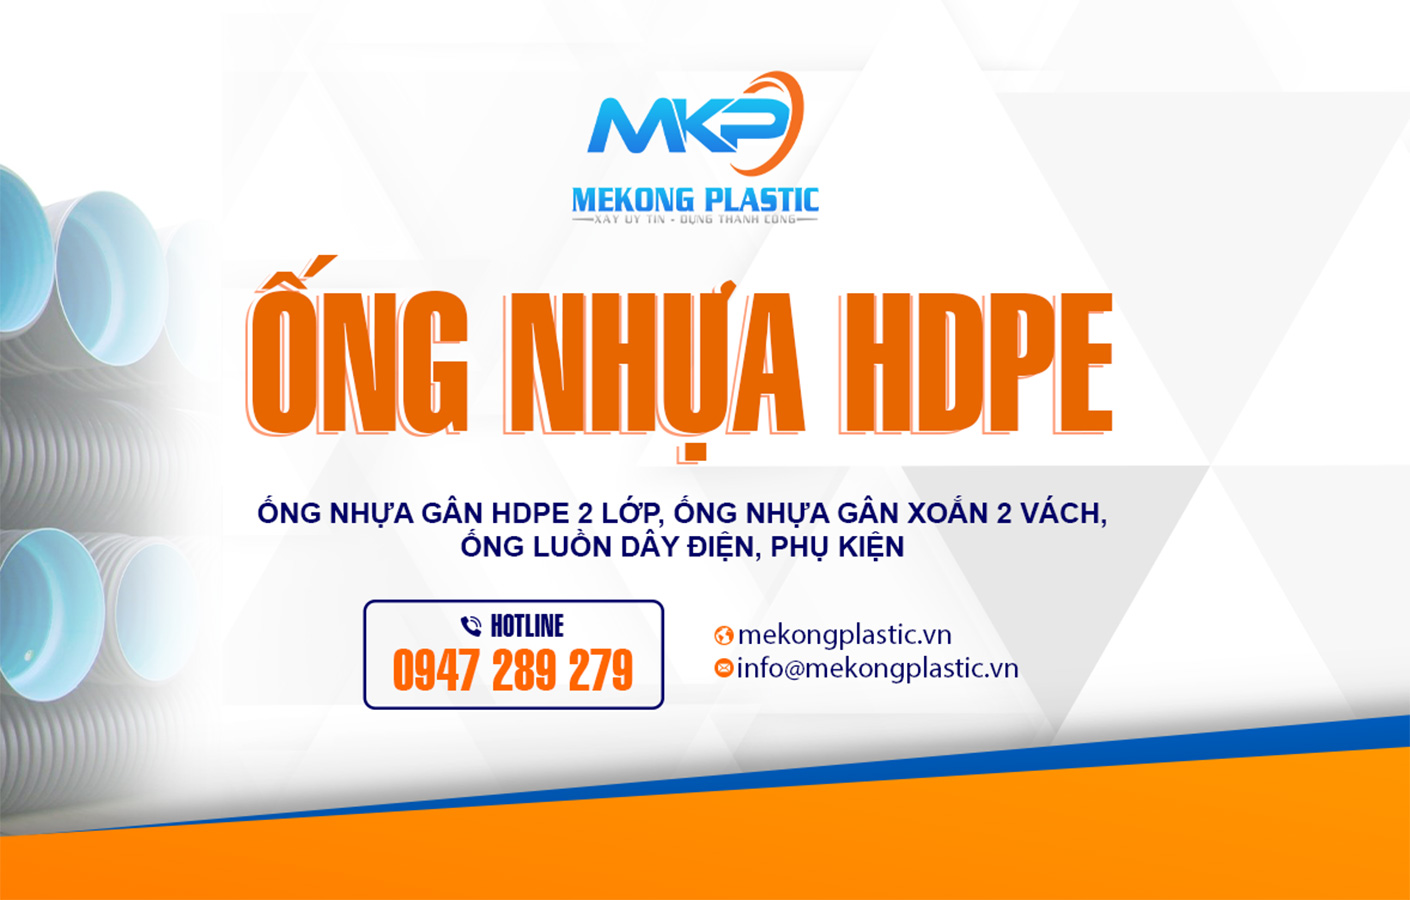 Chuyên cung cấp Ống Nhựa HDPE Khu Vực Miền Trung tại Mekong Plastic